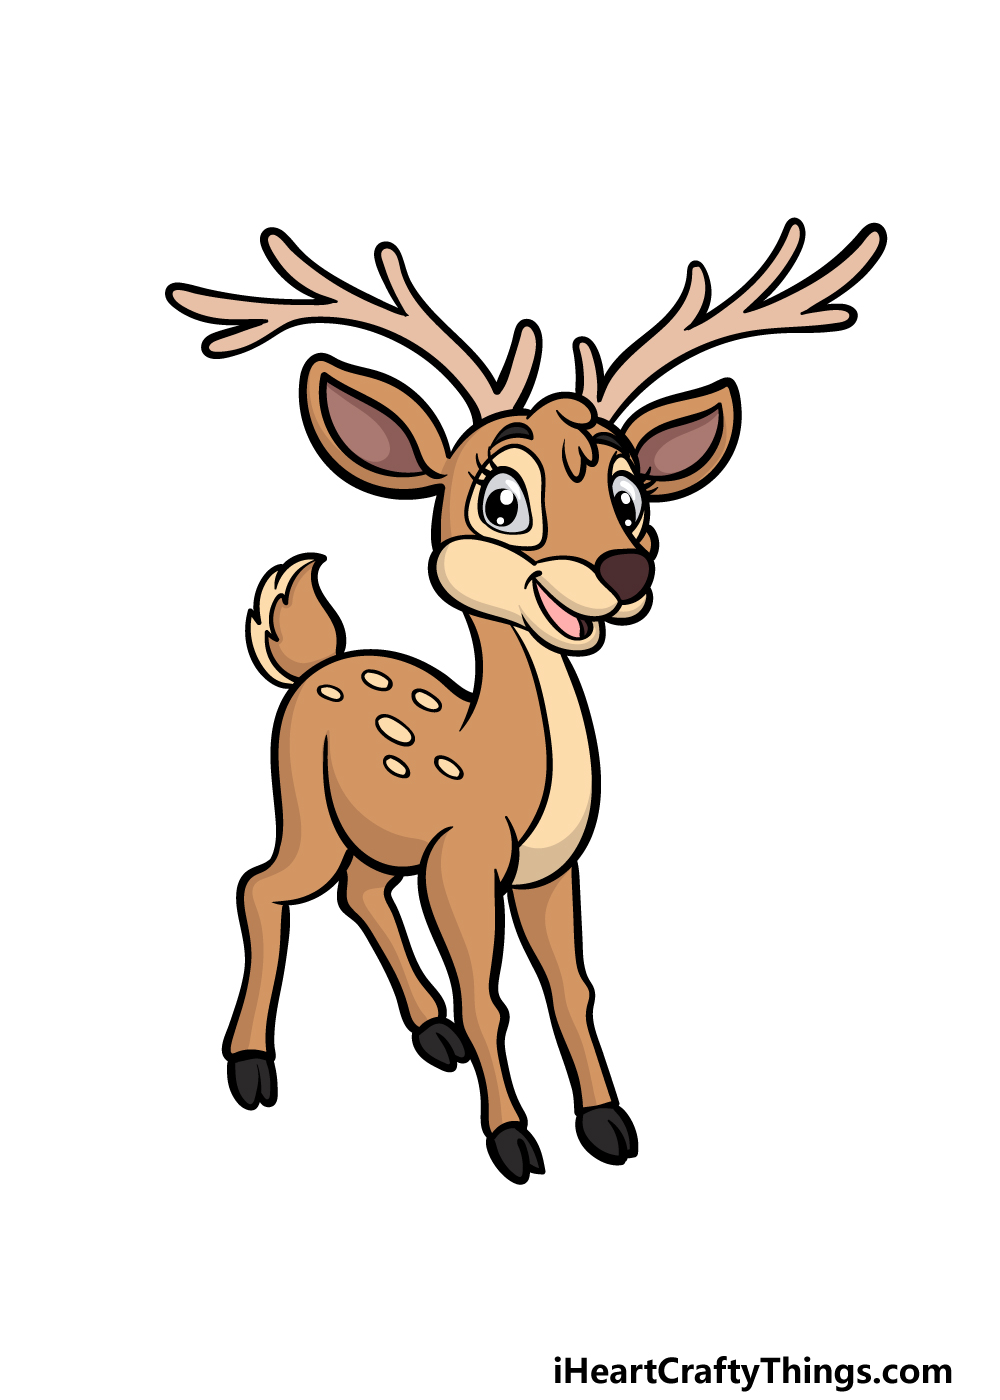 How to Draw a Deer | Drawings, Deer drawing, Book art drawings